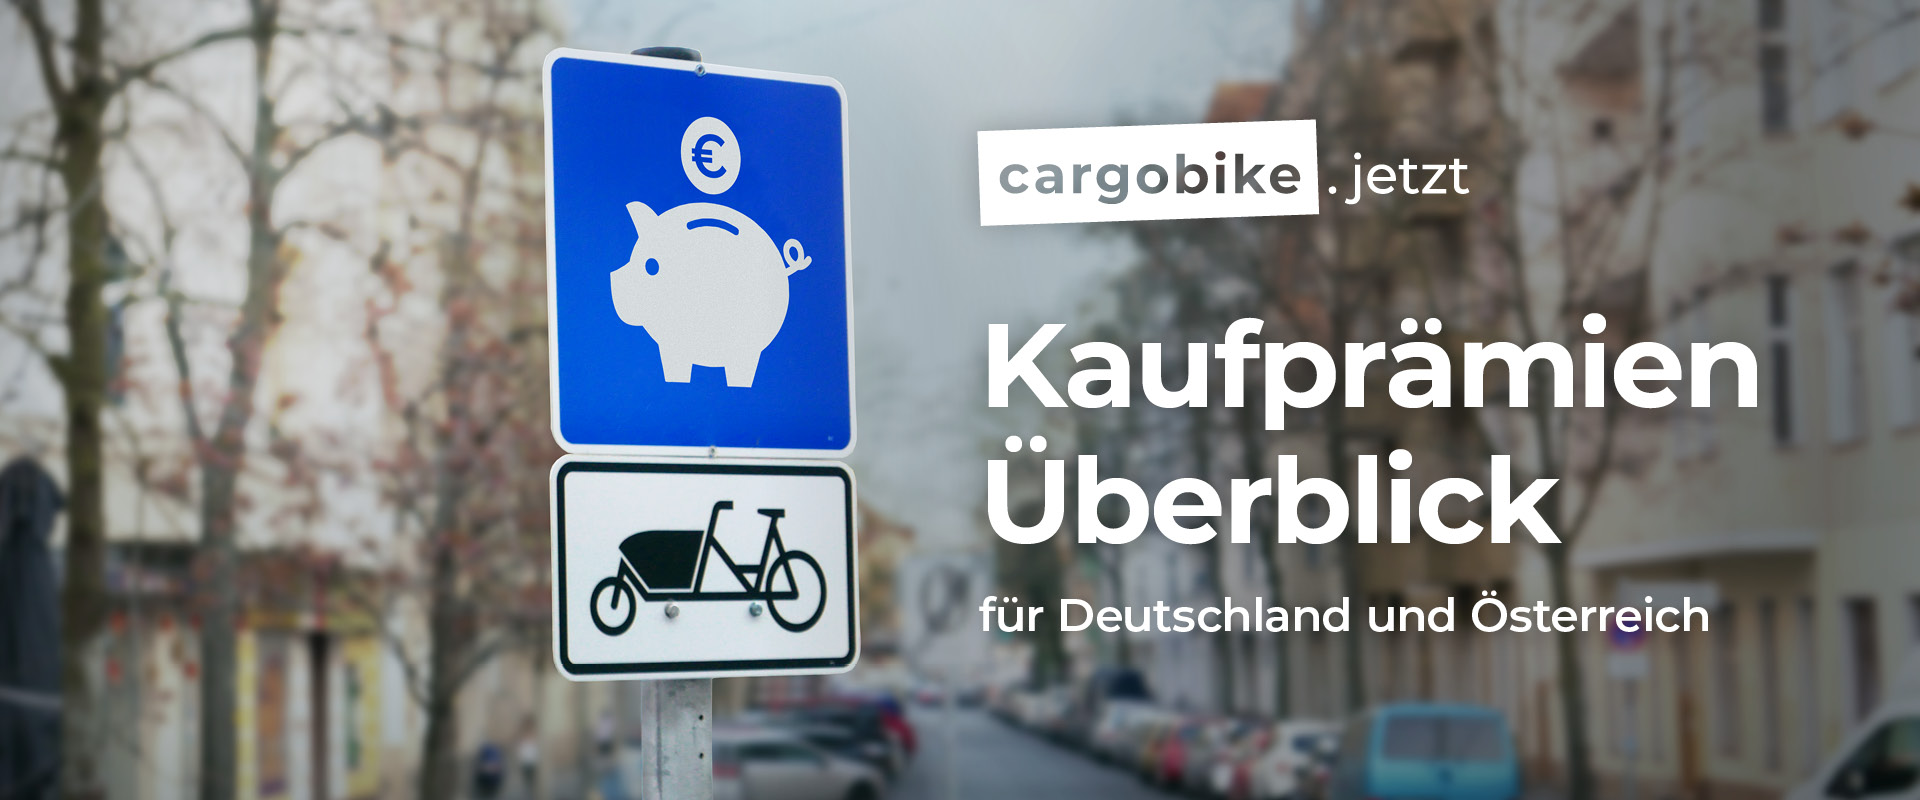 Teaserbild mit dem Text "cargobike.jetzt: Kaufprämien-Überblick für Lastenräder, für Deutschland und Österreich"